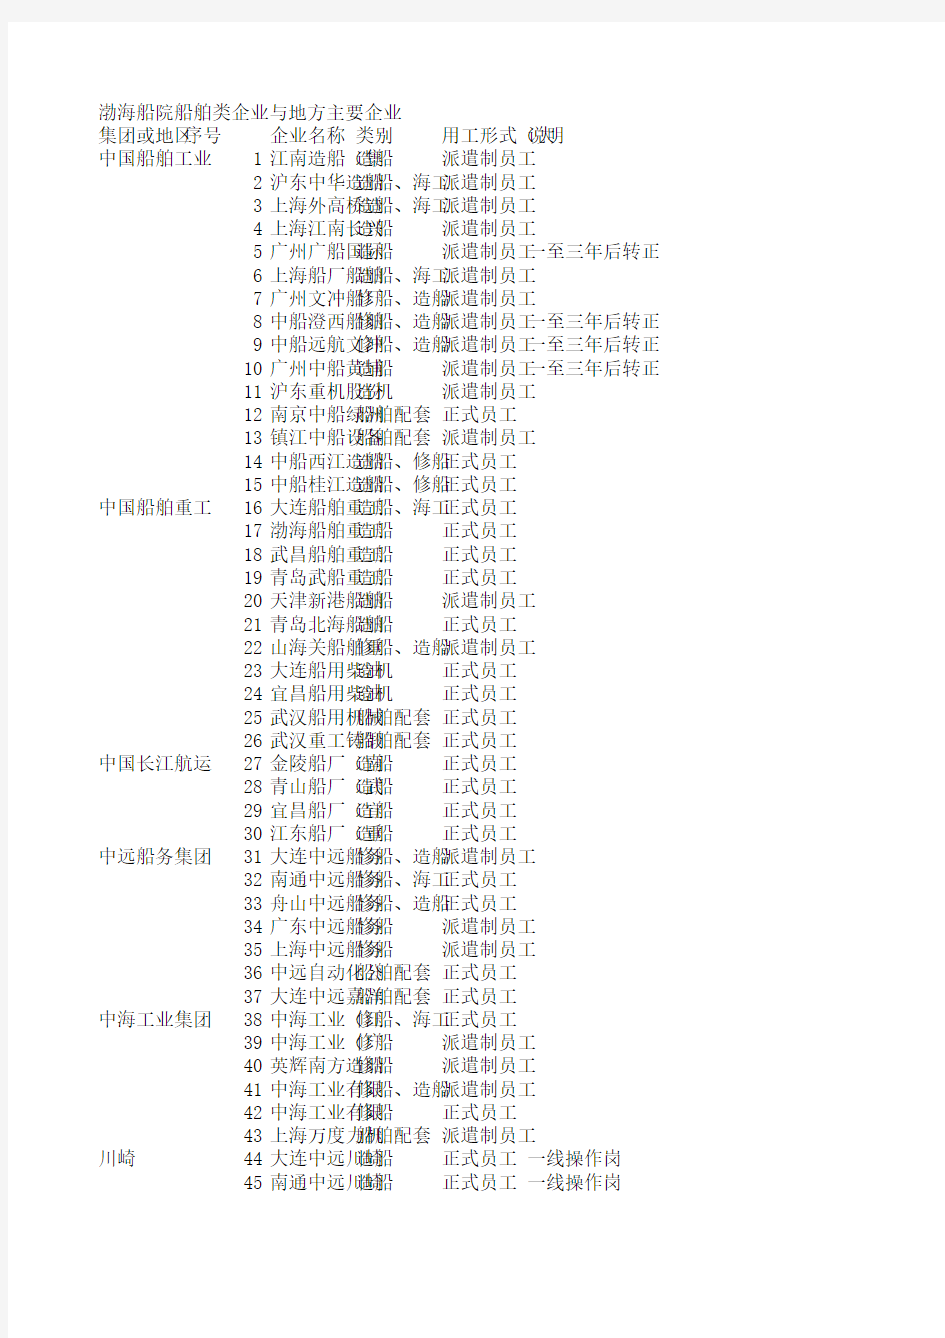 中国船舶企业分布表